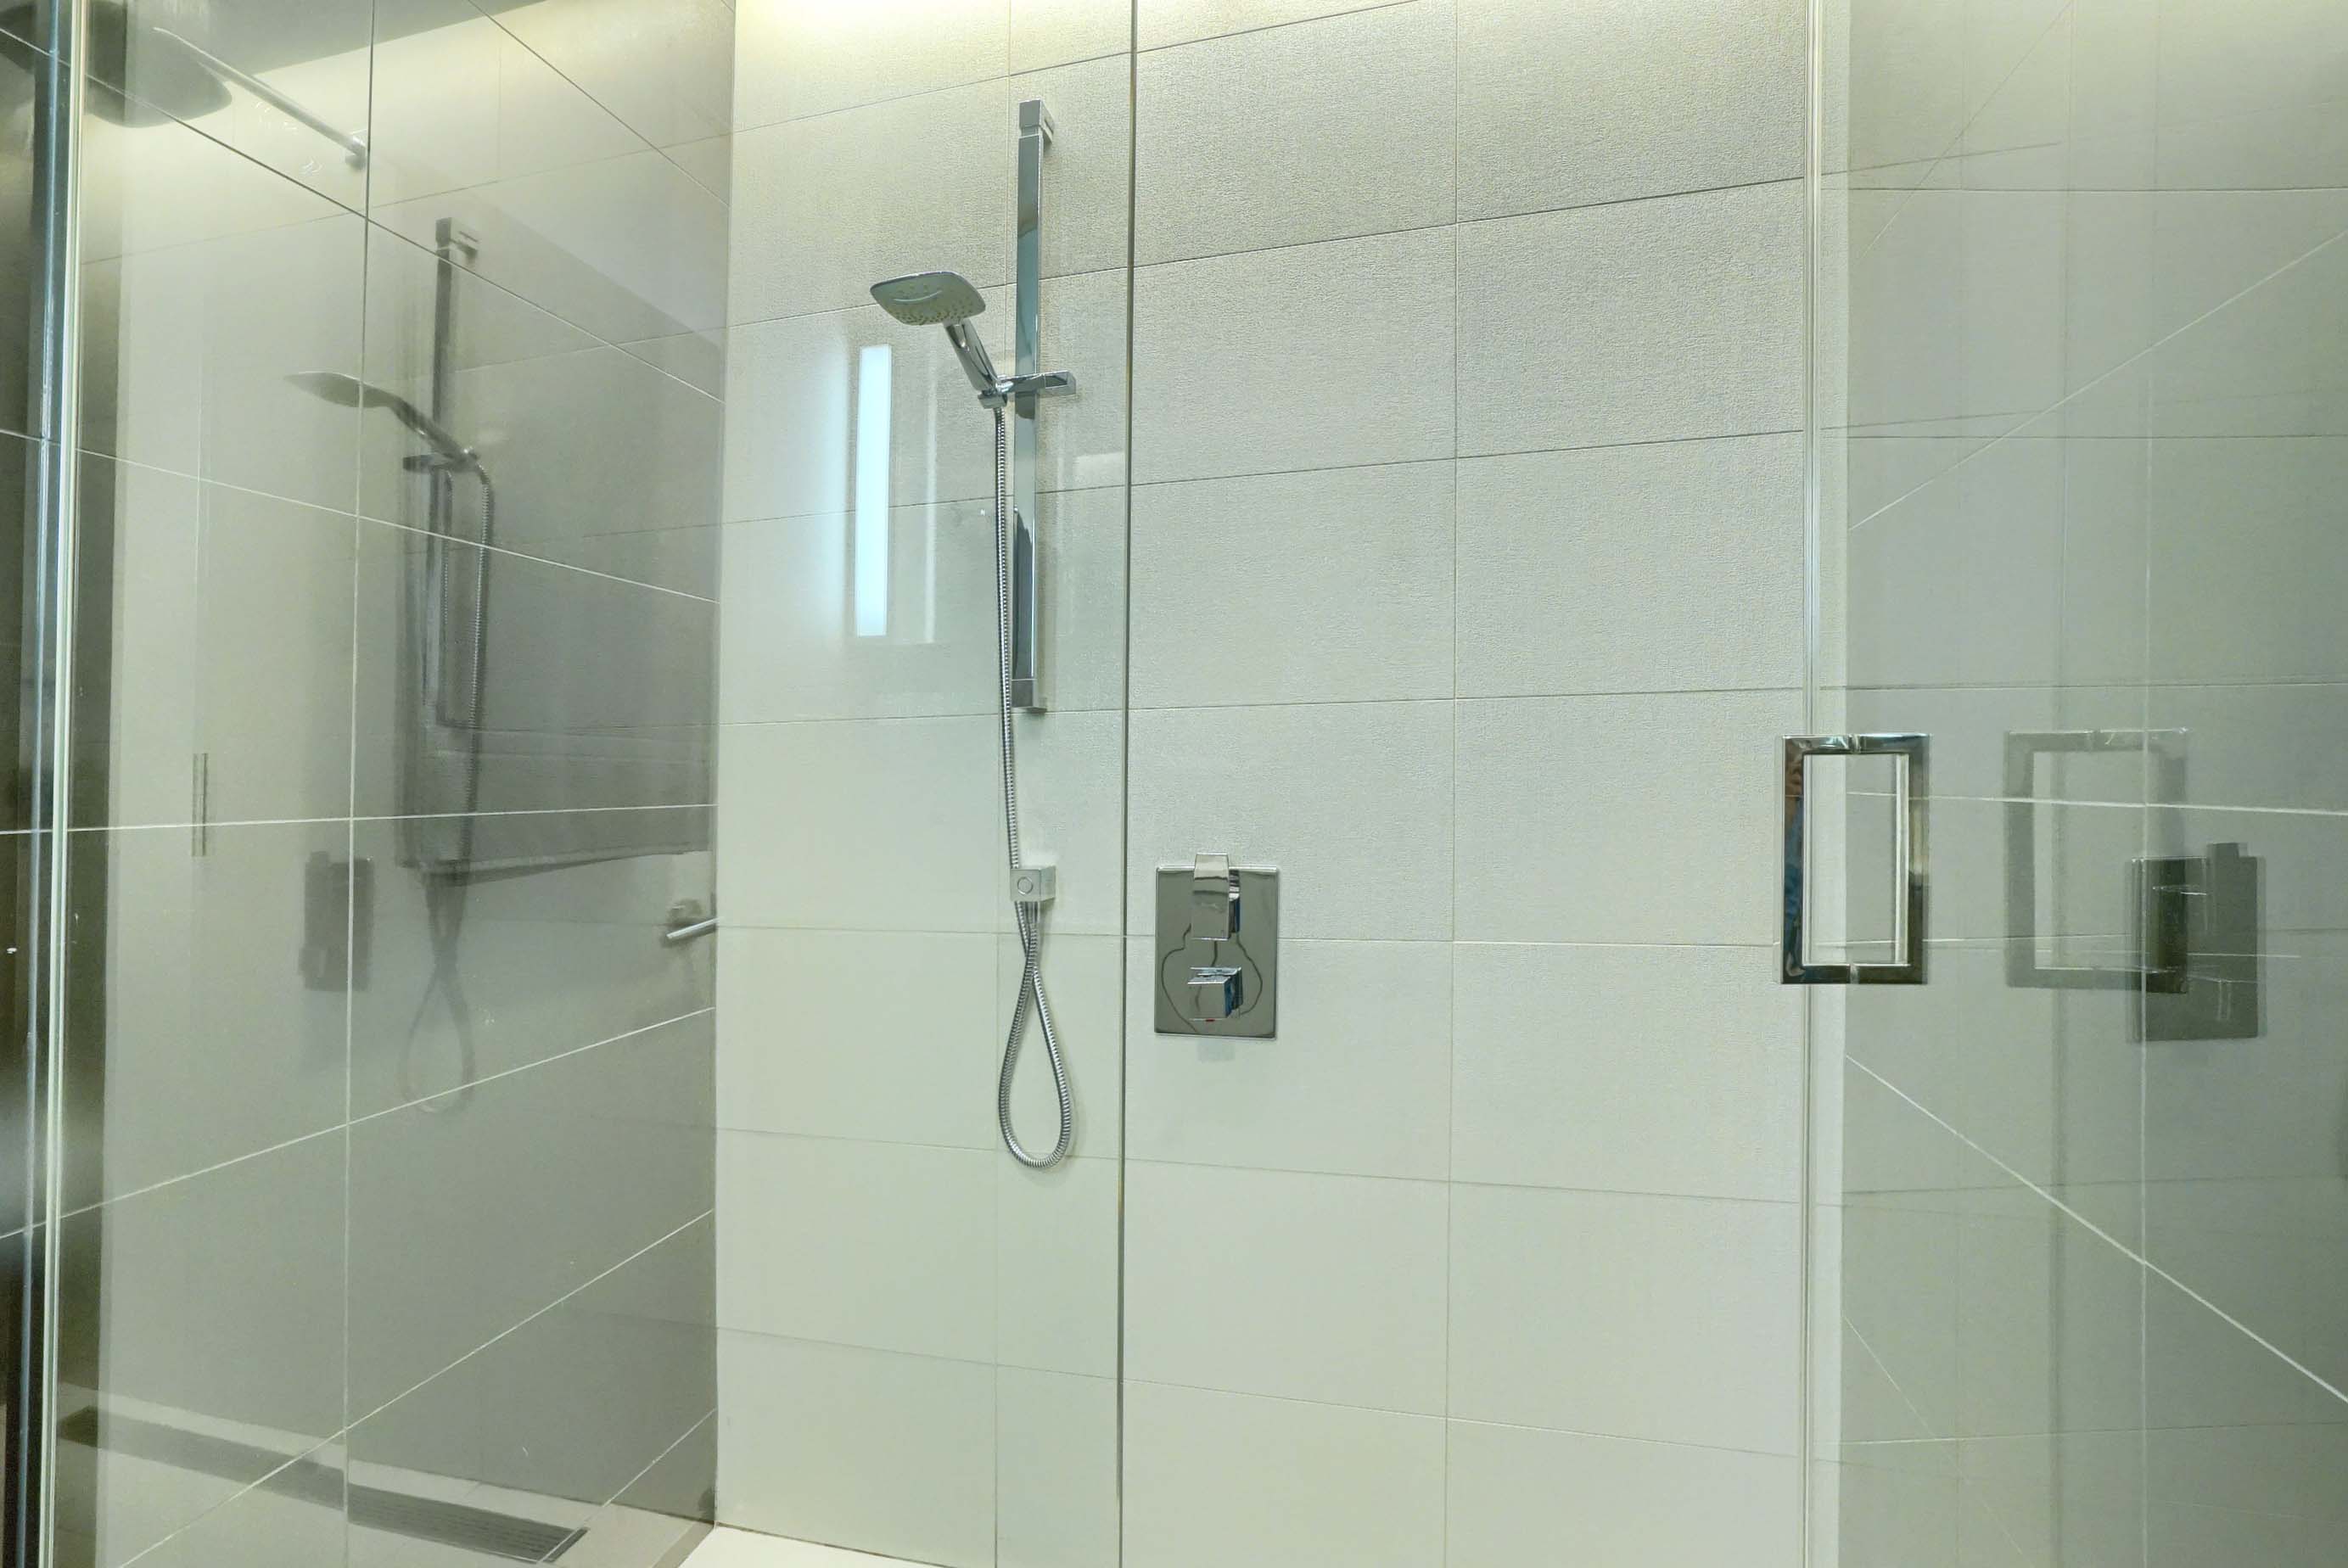 Vue élargie de la douche en verre du sol au plafond avec des robinets modernes en acier inoxydable, des poignées et une pomme de douche réglable. Une salle de bain parfaite pour cet appartement de luxe meublé de luxe à Montréal